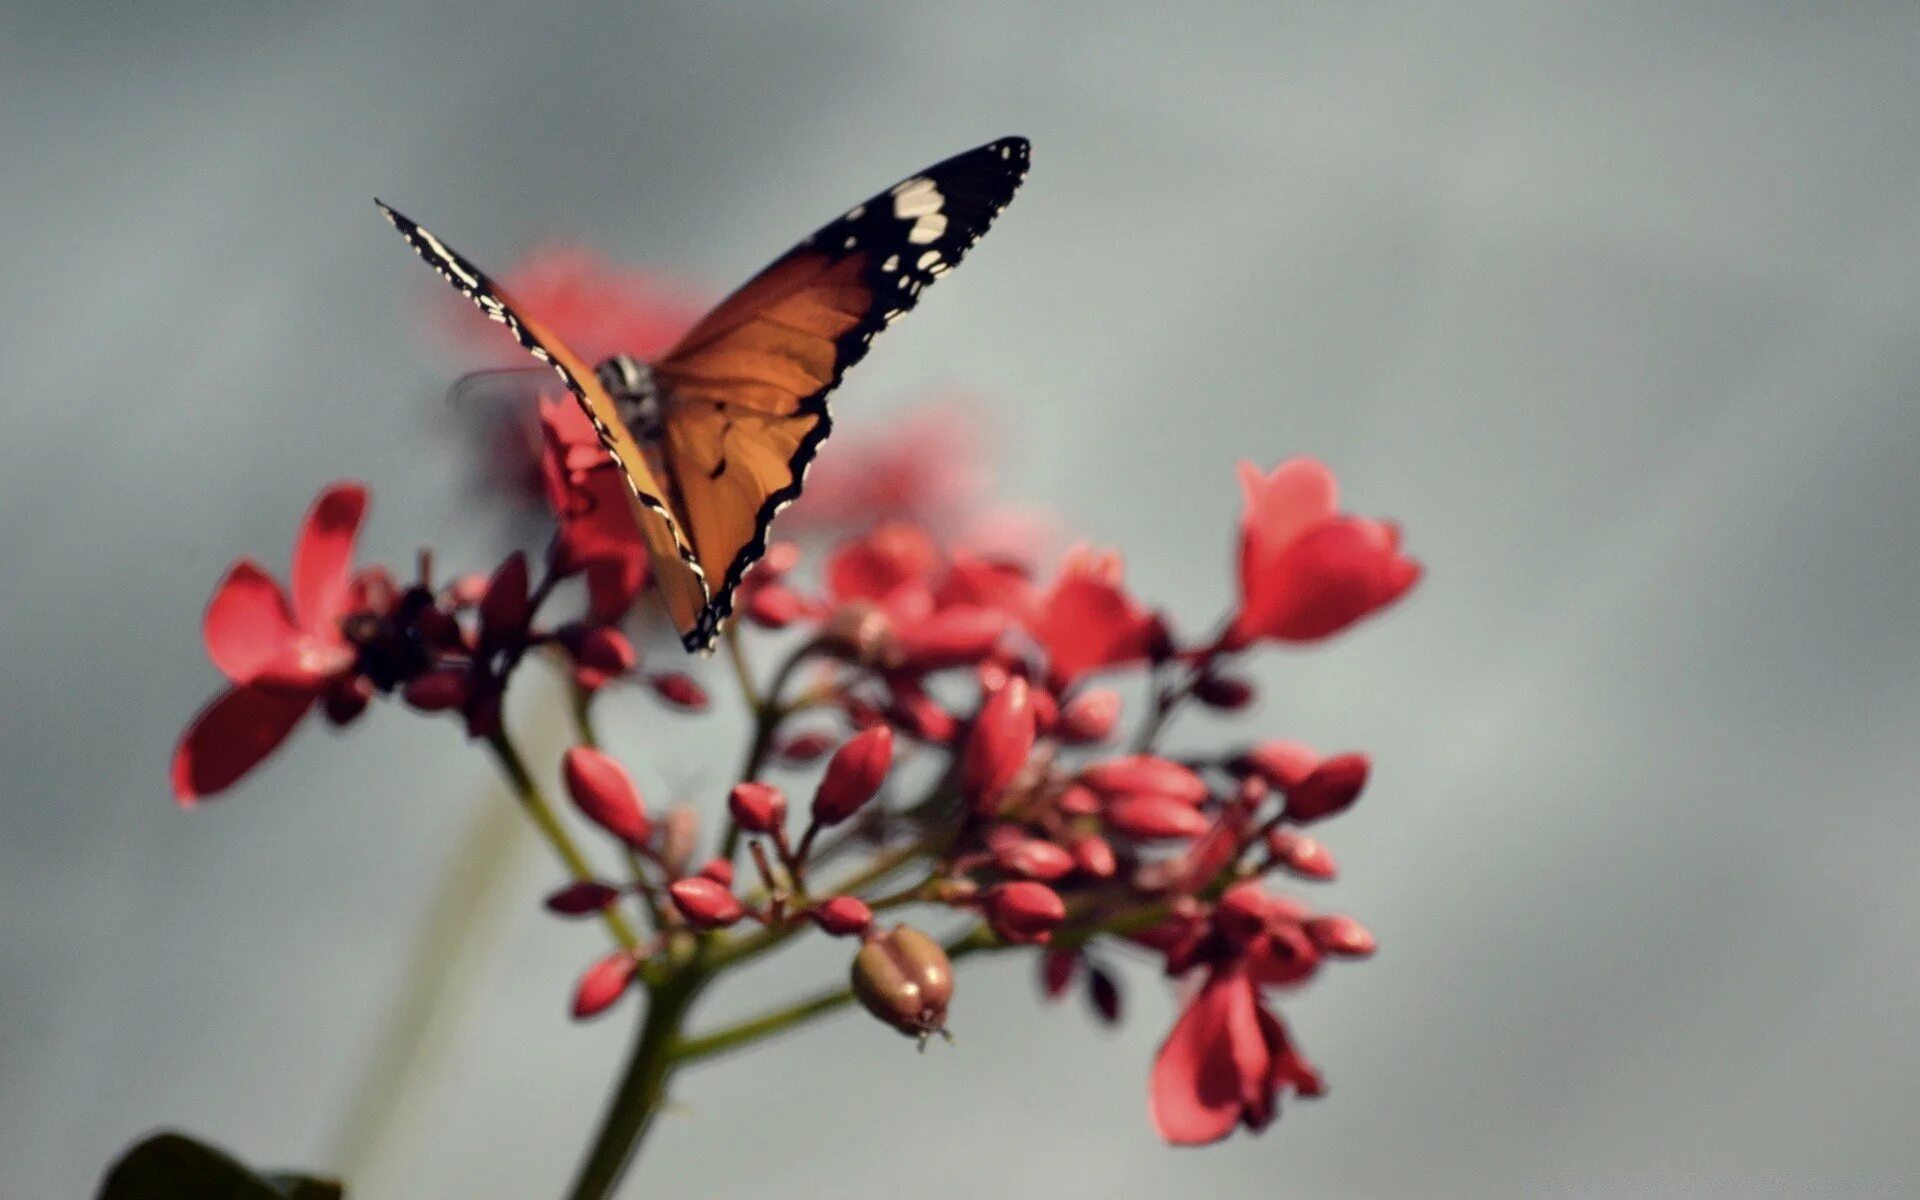 Красивые обои на андроид вертикально. Бабочка. Бабочки в природе. Бабочка на цветке. Красивые обои на телефон.